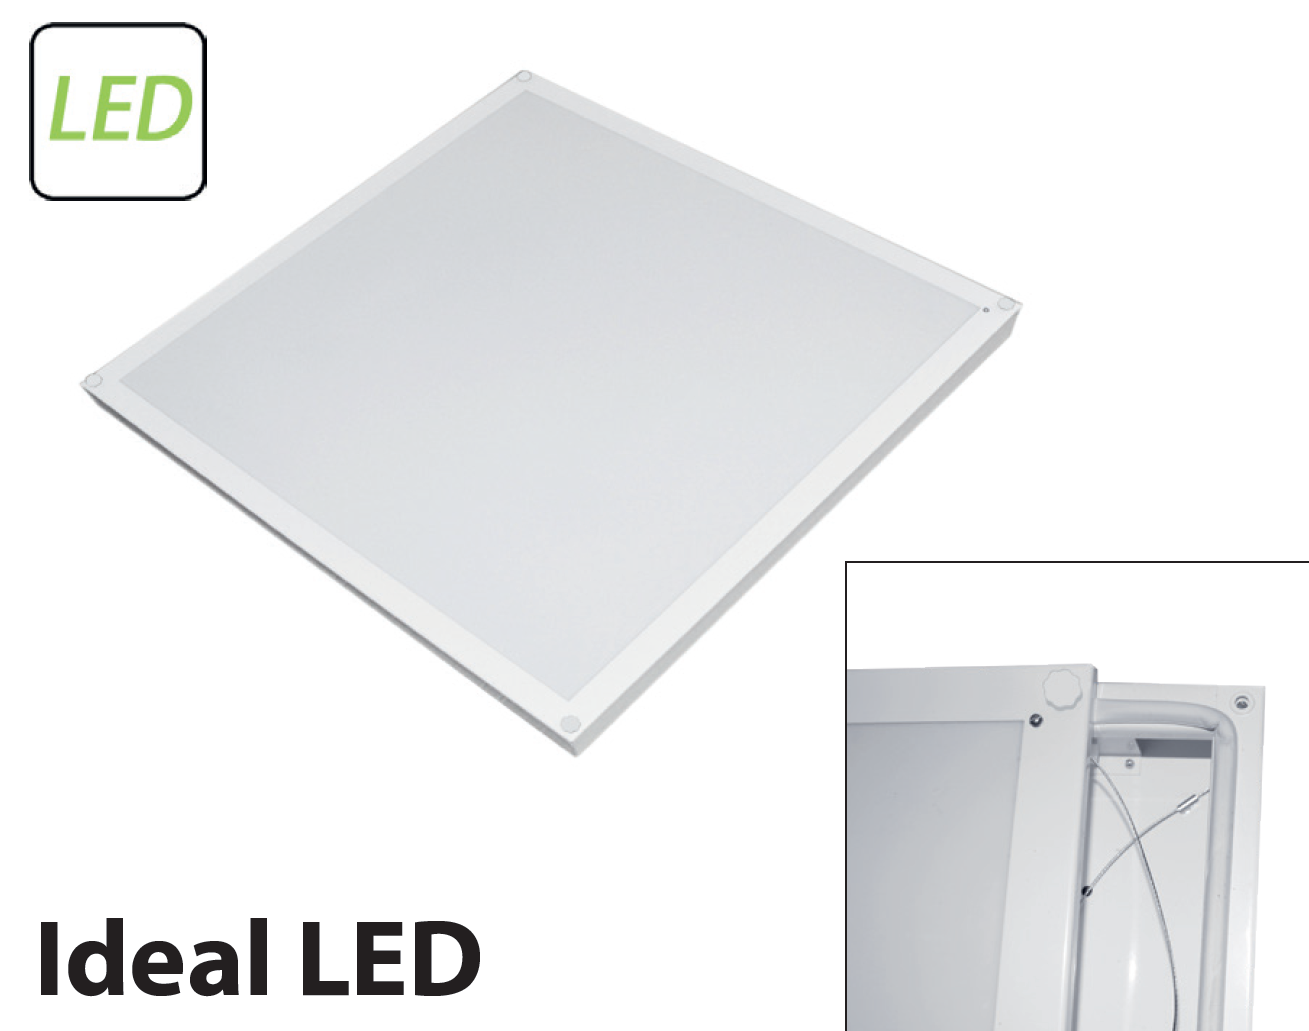        Ideal LED-02 () 0263636193-55 